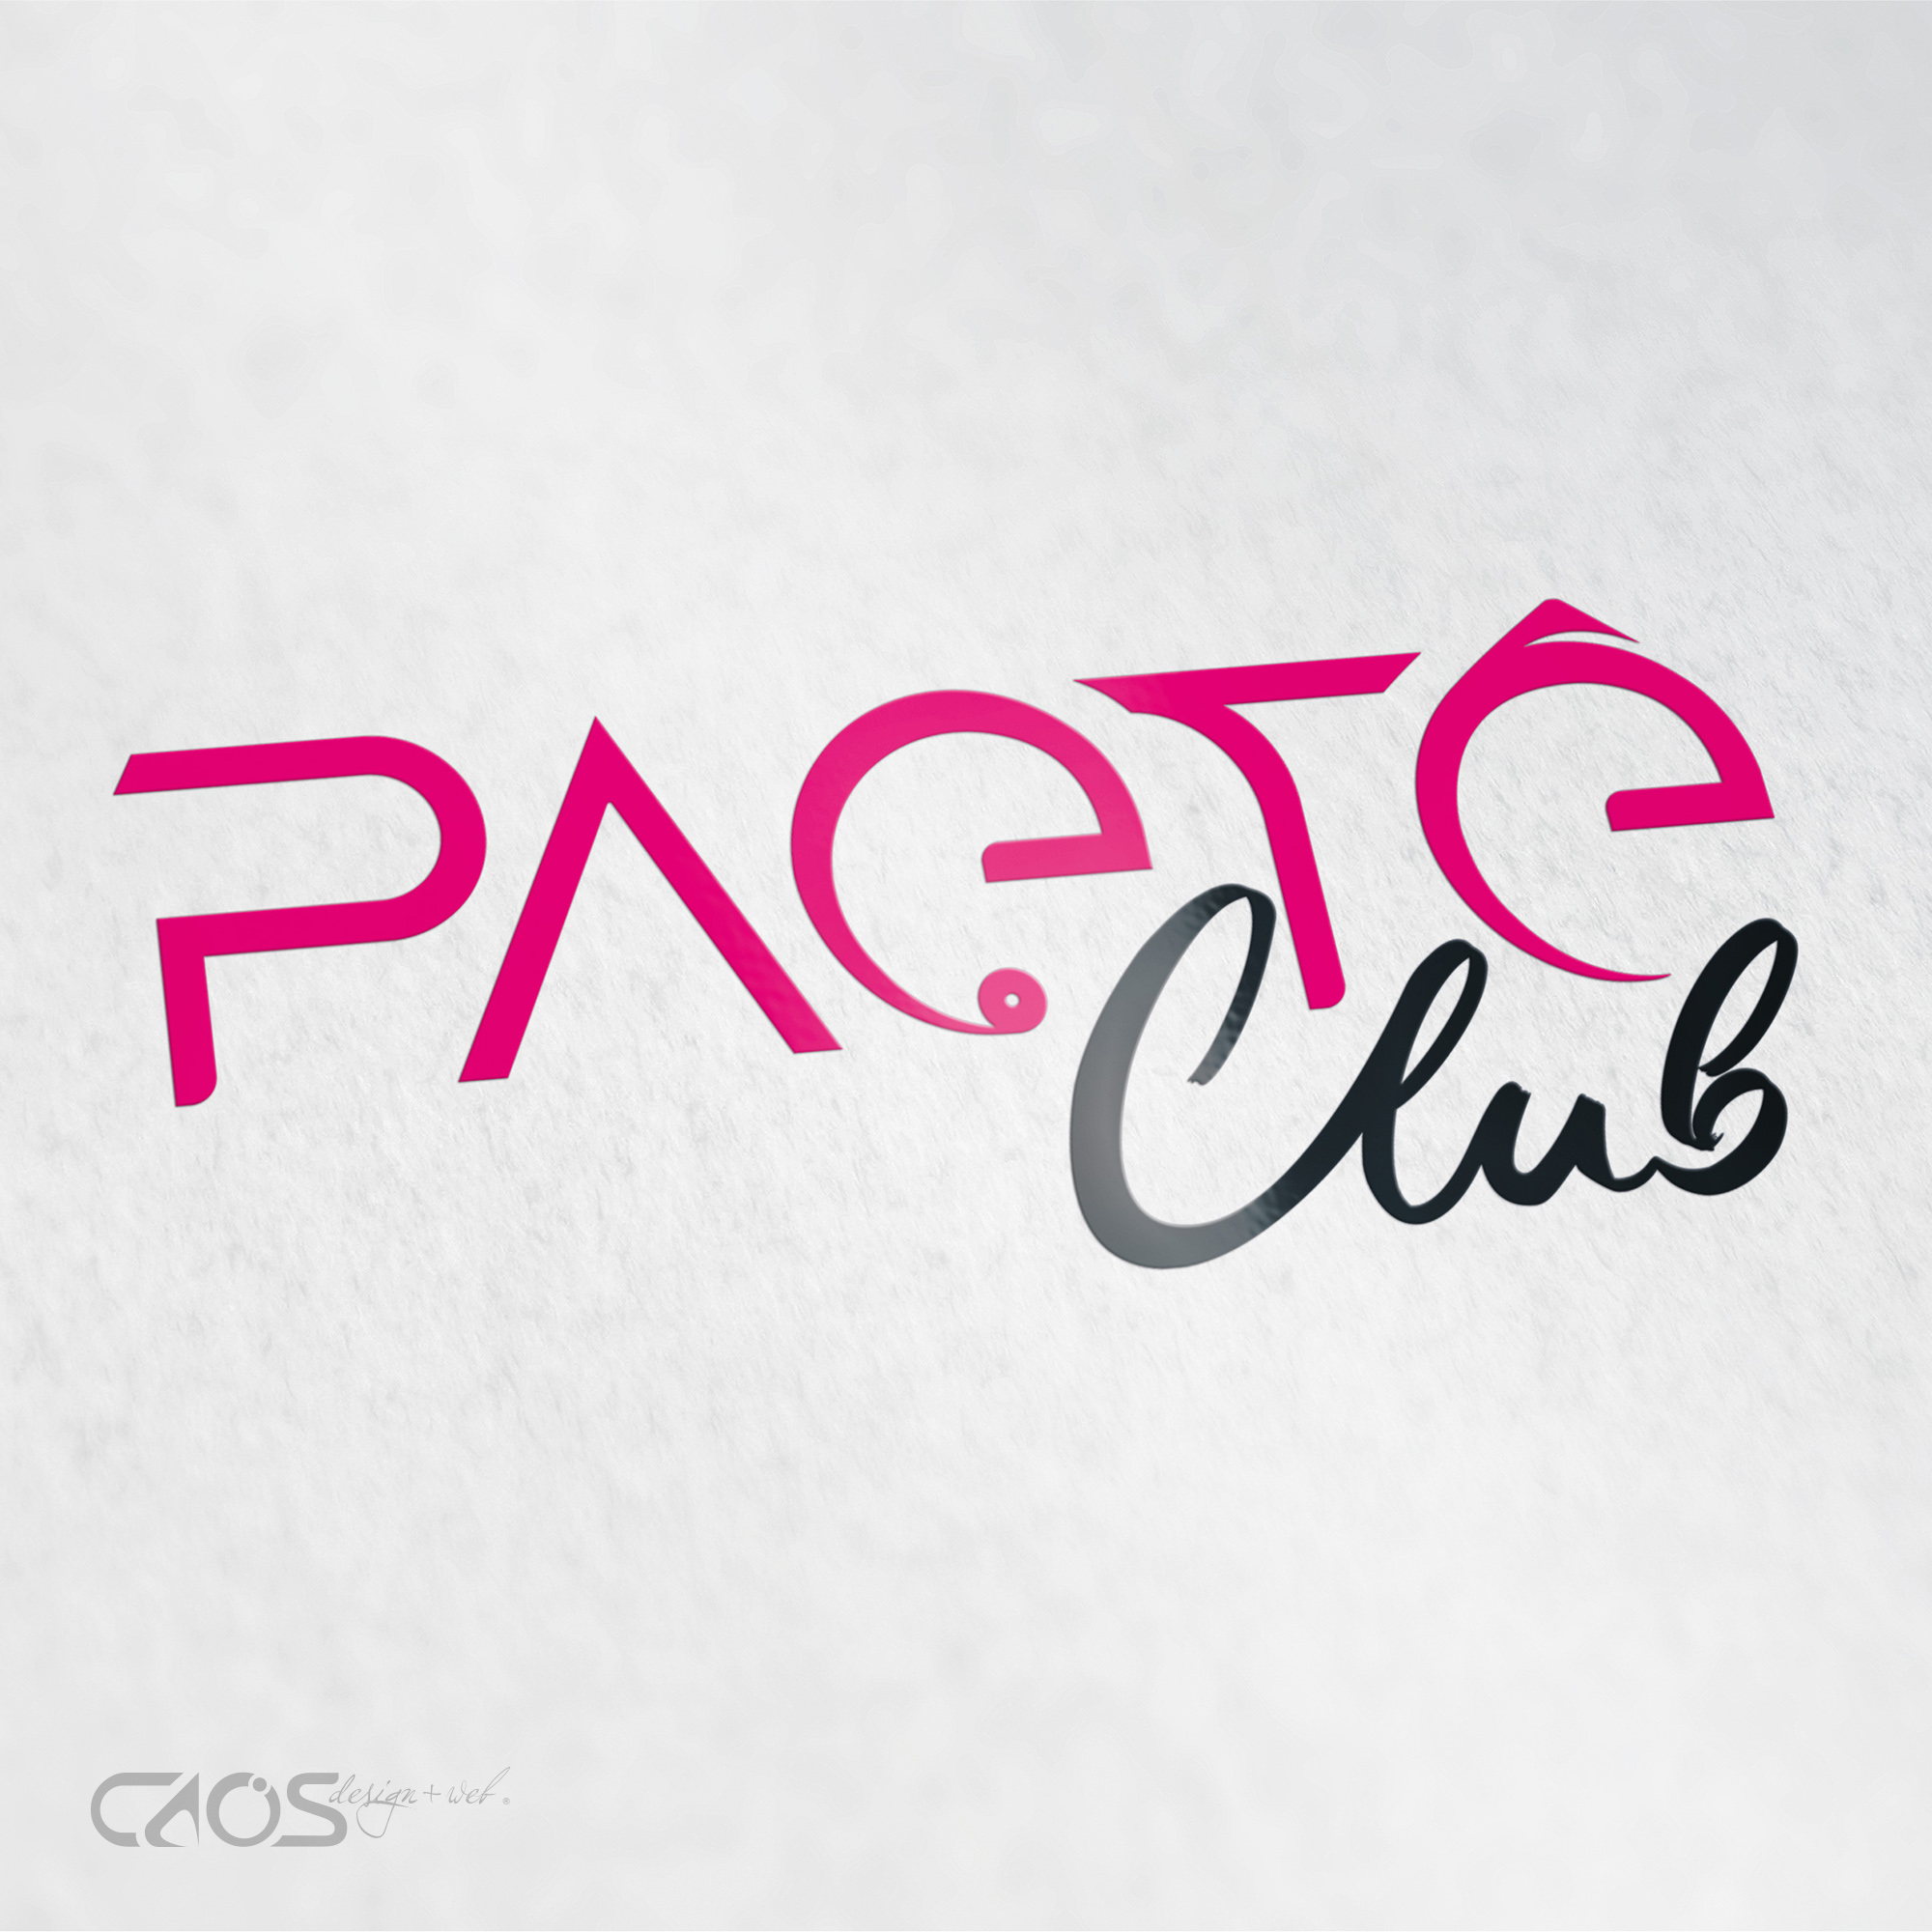 Paetê Club